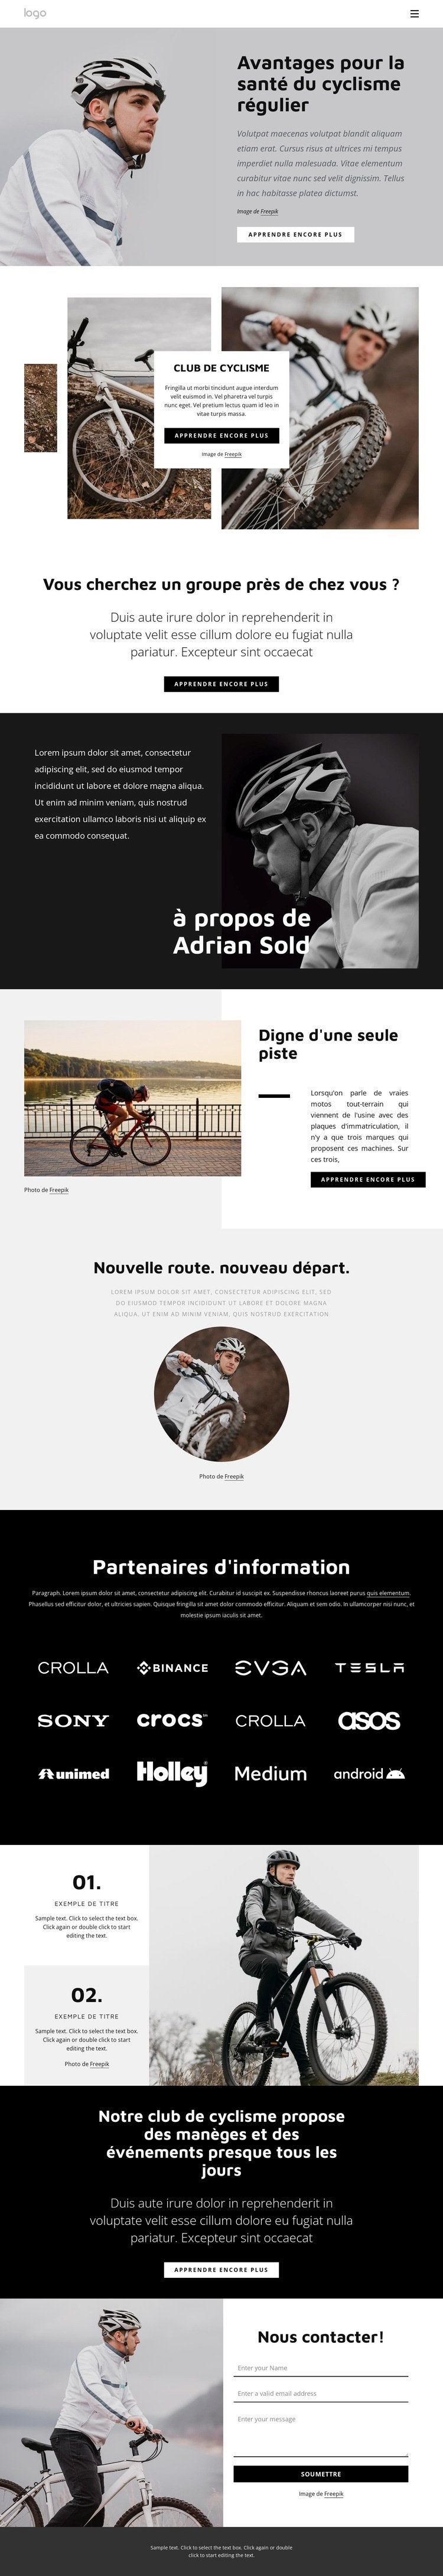 Avantages du cyclisme régulier Conception de site Web